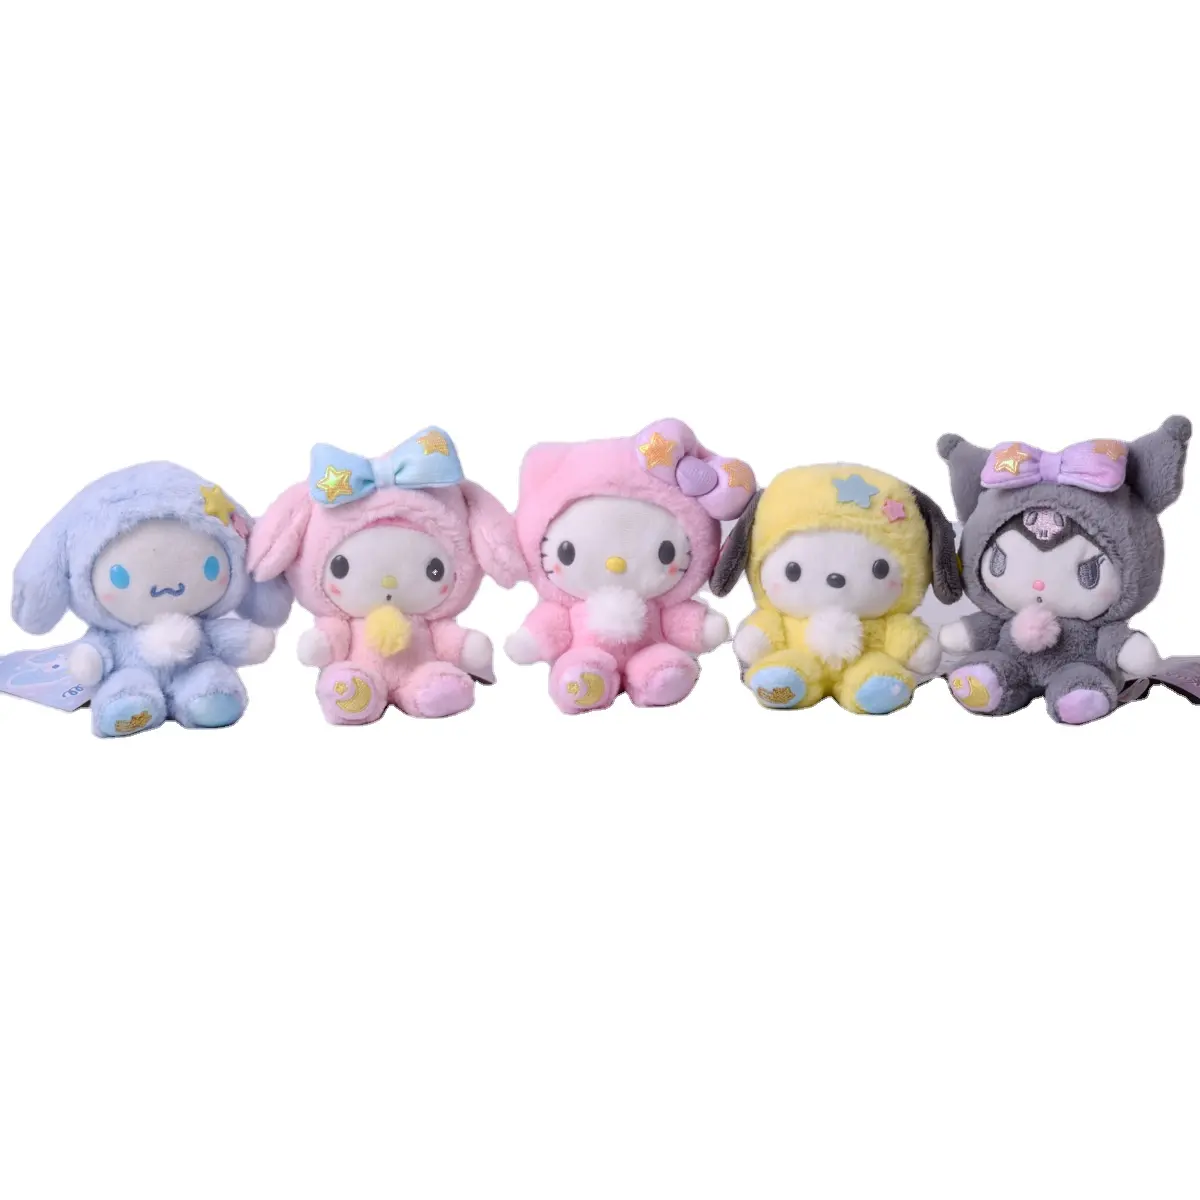 الأعلى مبيعاً ألعاب أطفال Plus Cute Kuromi محشوة بأشكال الحيوانات ألعاب وأشكال مخدة مُزينة بقطة أكياس رسوم متحركة وأشكال مخدة للأطفال